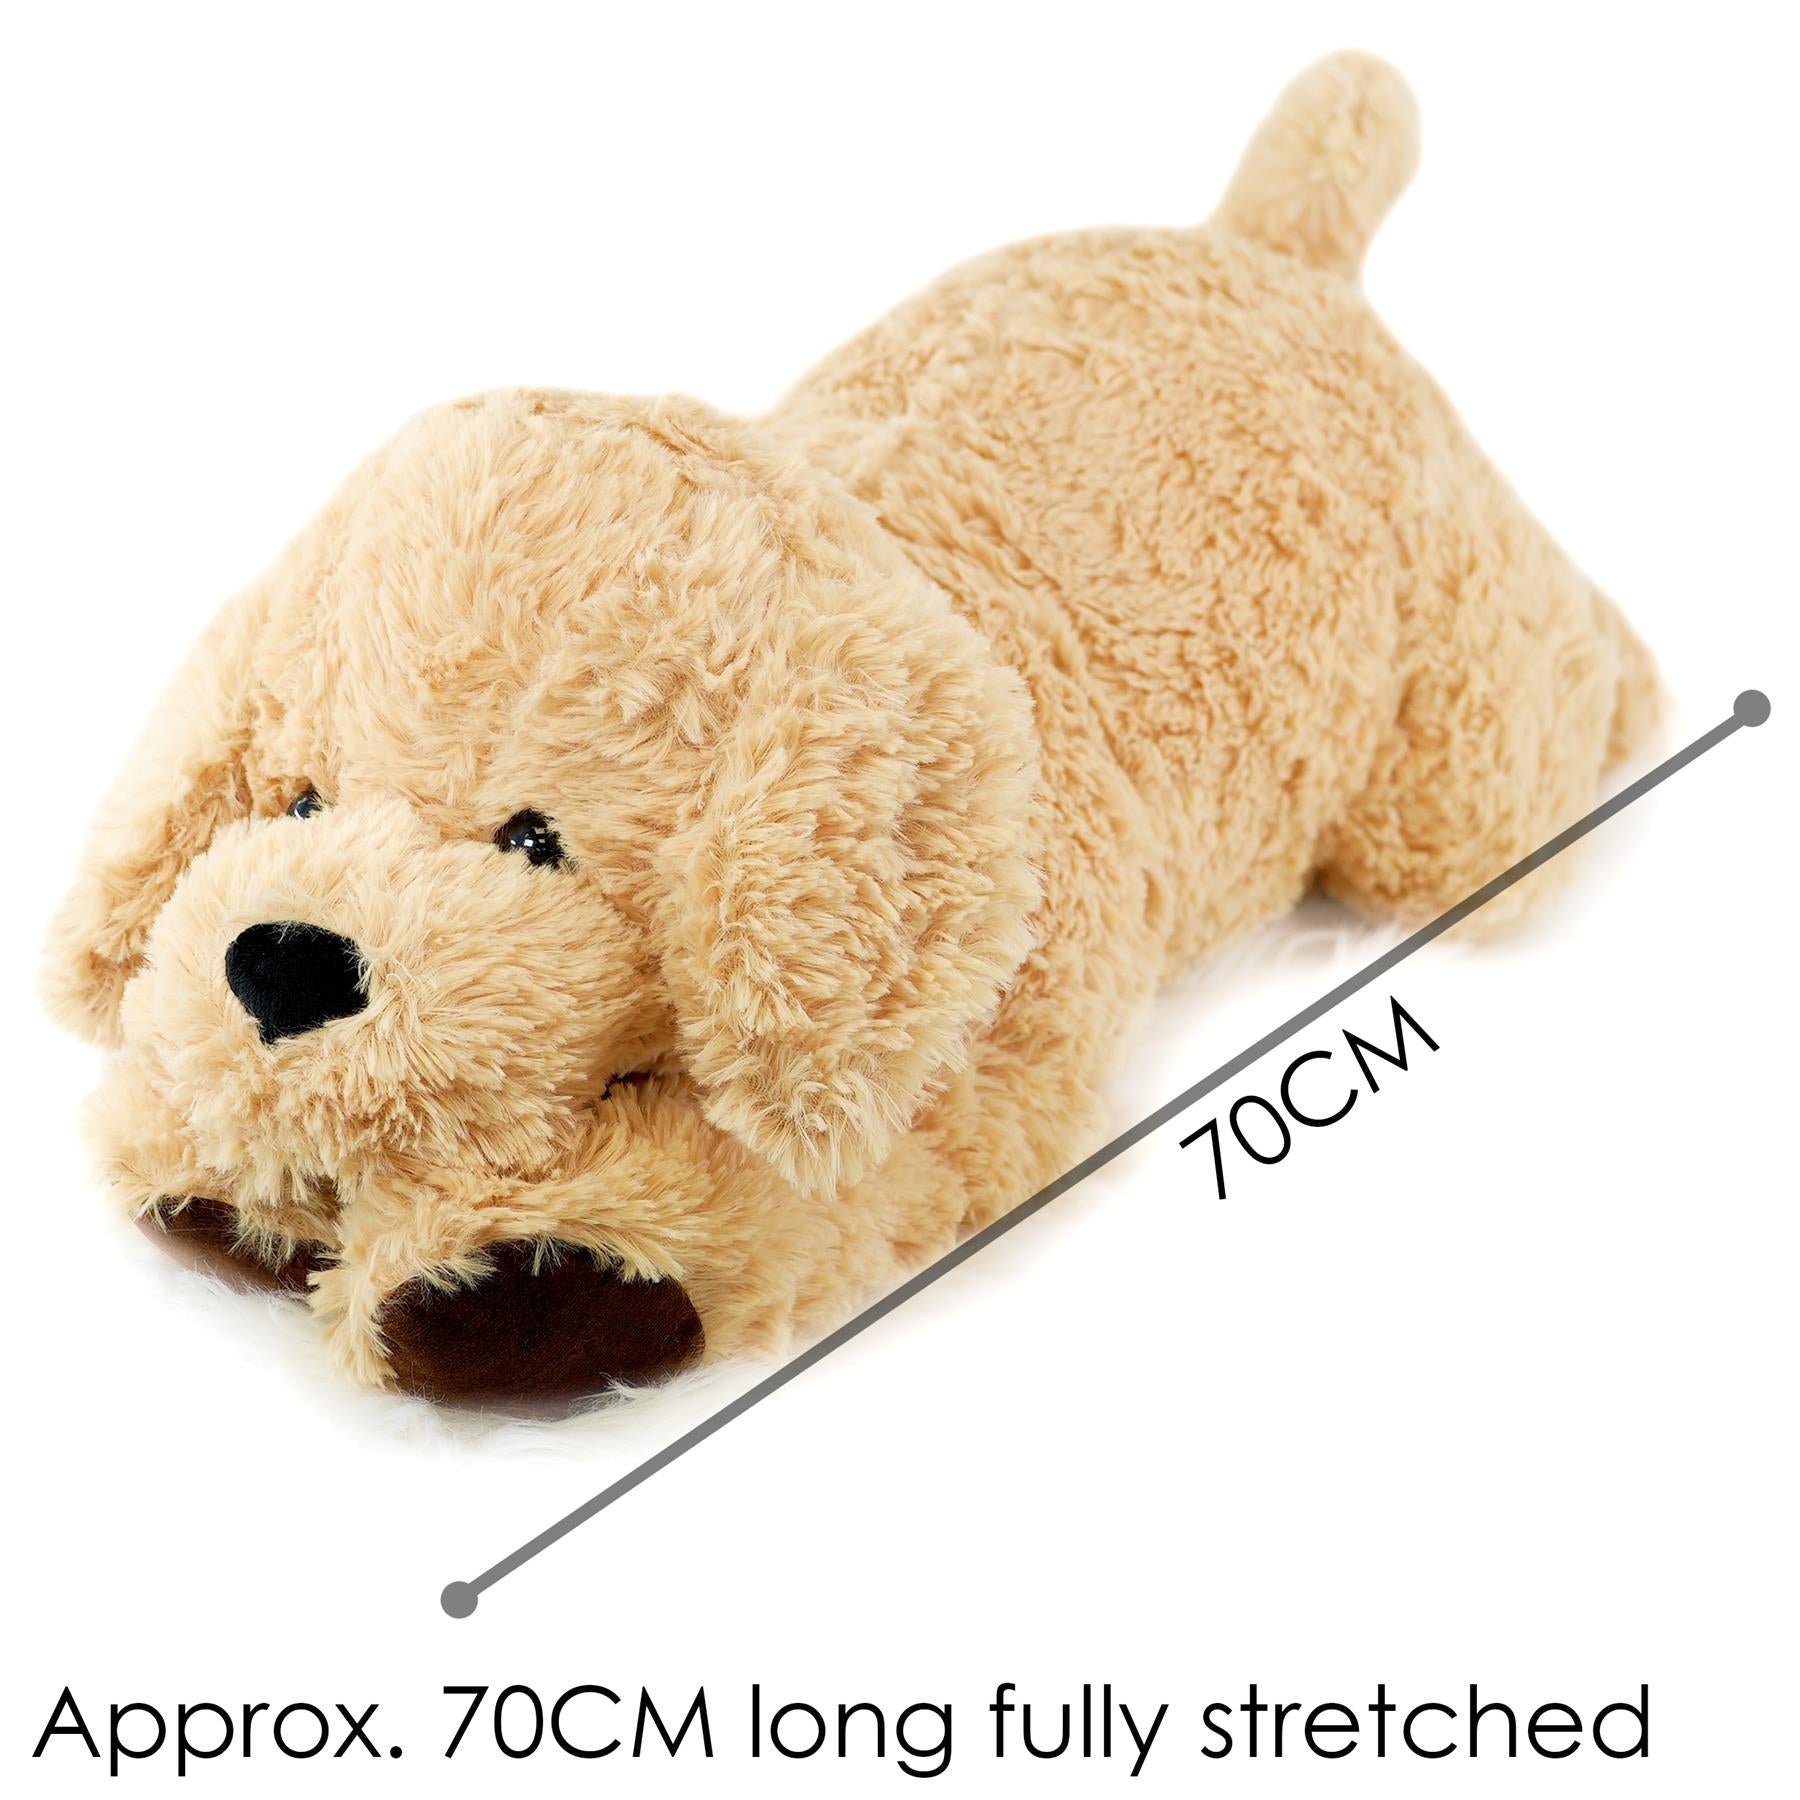 Giant Plush Lying Dog Soft Toy, 28 Inch by The Magic Toy Shop - UKBuyZone